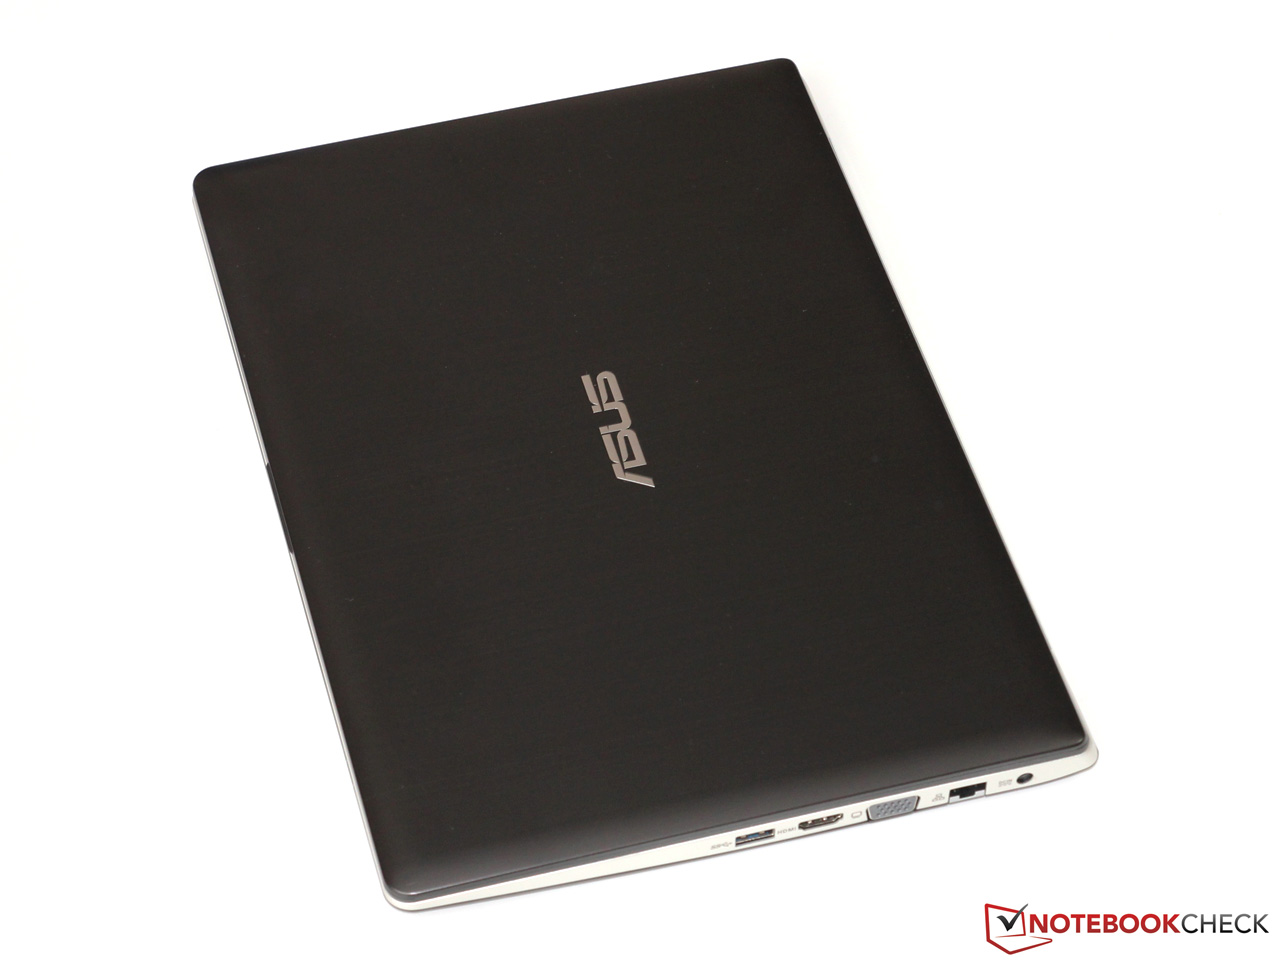 Asus VivoBook S300CA-C1016H